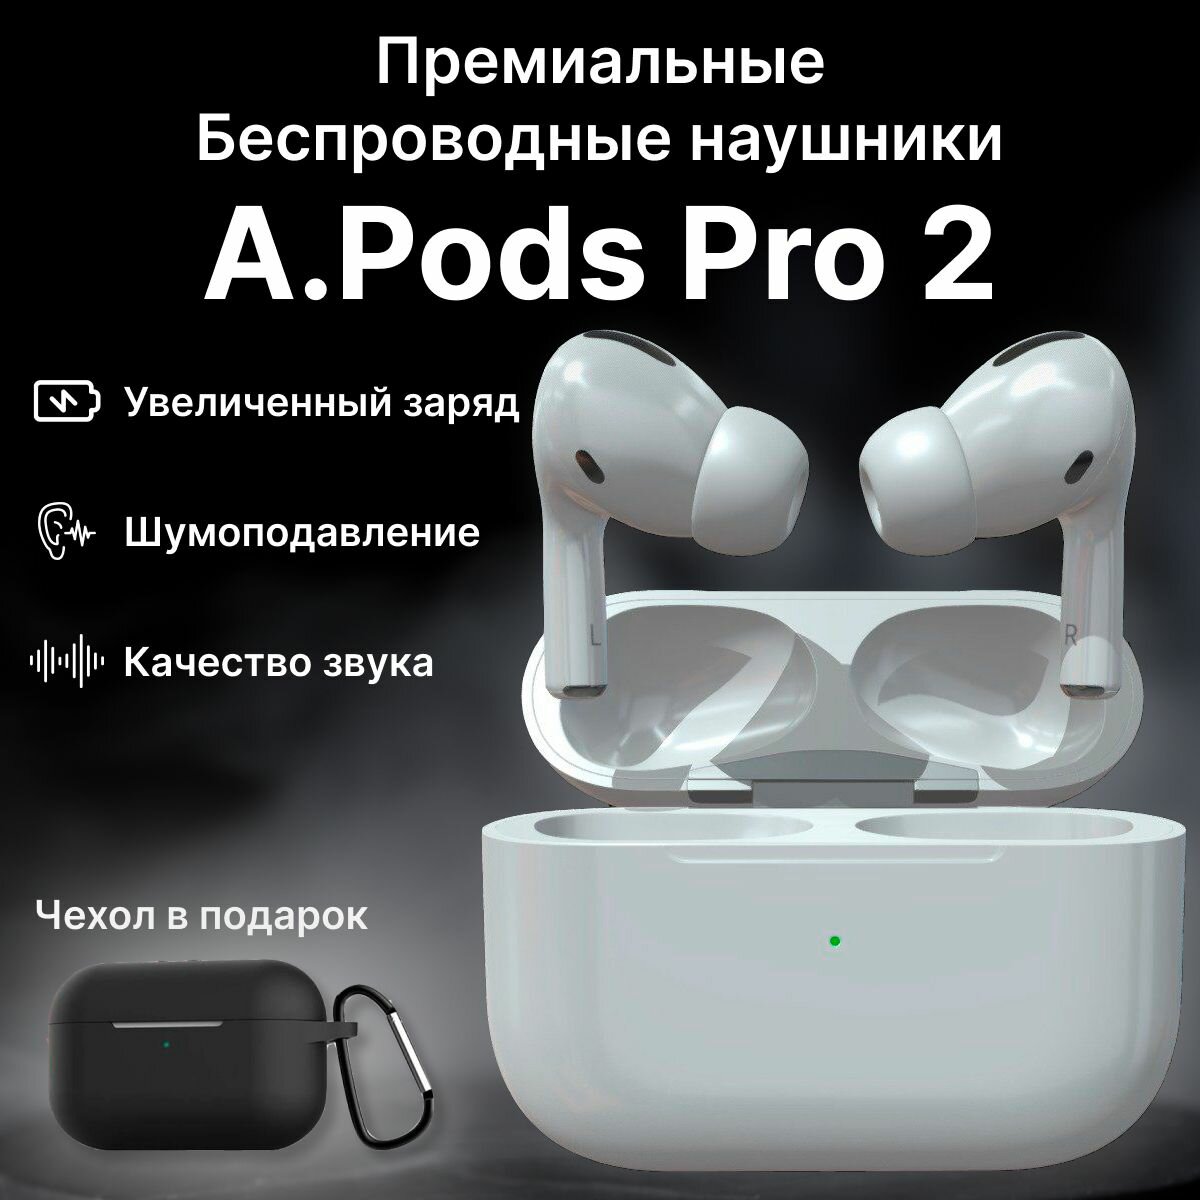 Наушники беспроводные A.Pods Pro 2 Premium. Bluetooth 5.0. Блютуз наушники с активным шумоподавлением, чехол в подарок